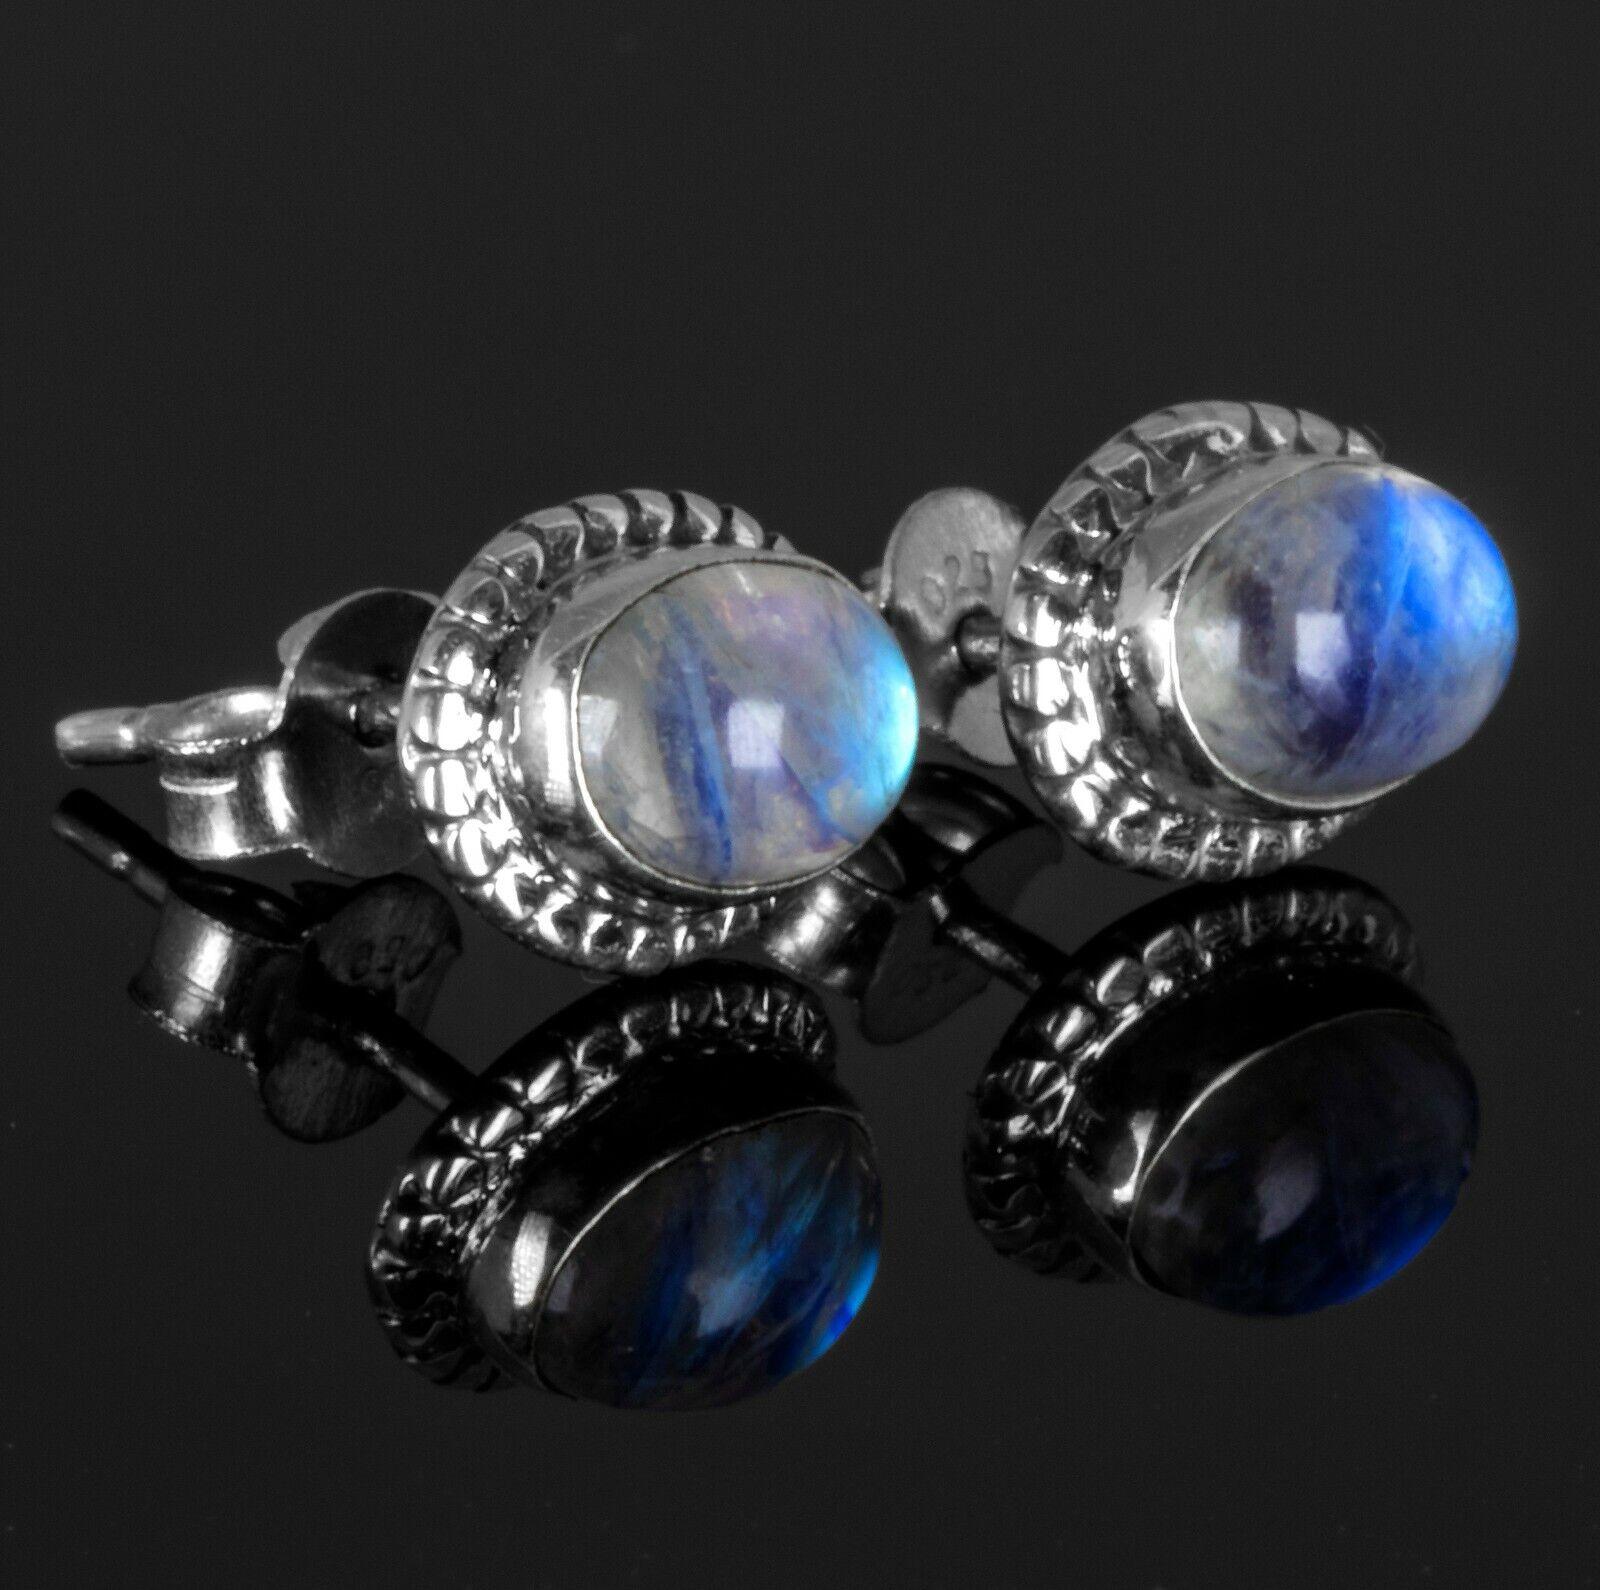 Elegant Genuine 925 Sterling Silver Moonstone Oval Earrings Studs Gemstone